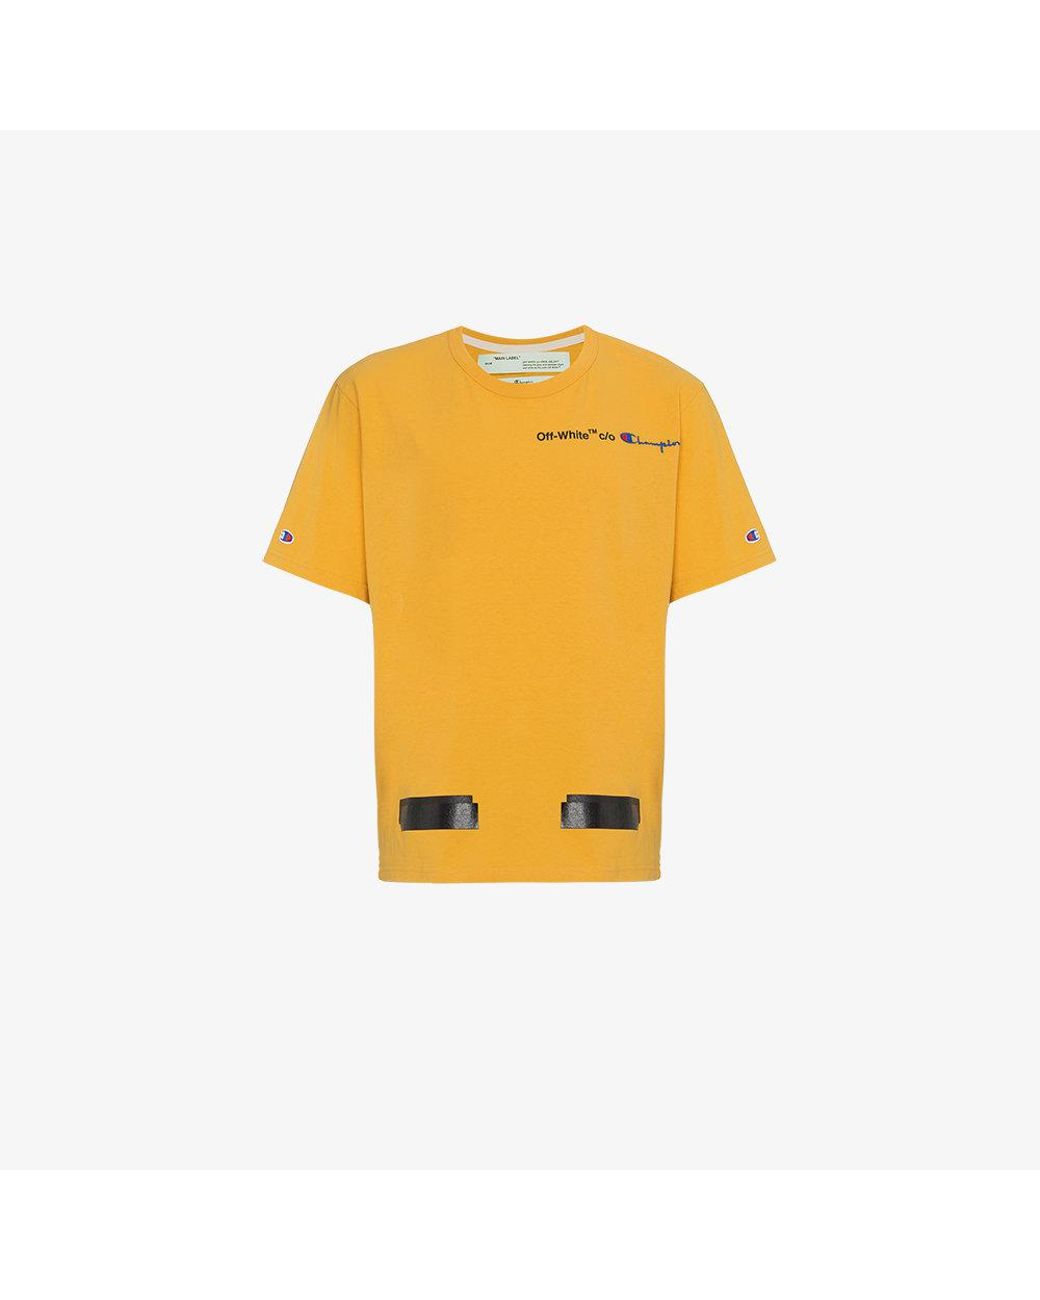 NWT OFF-WHITE C/O VIRGIL ABLOH Orange Pajama Style Shirt Size 40 $1260